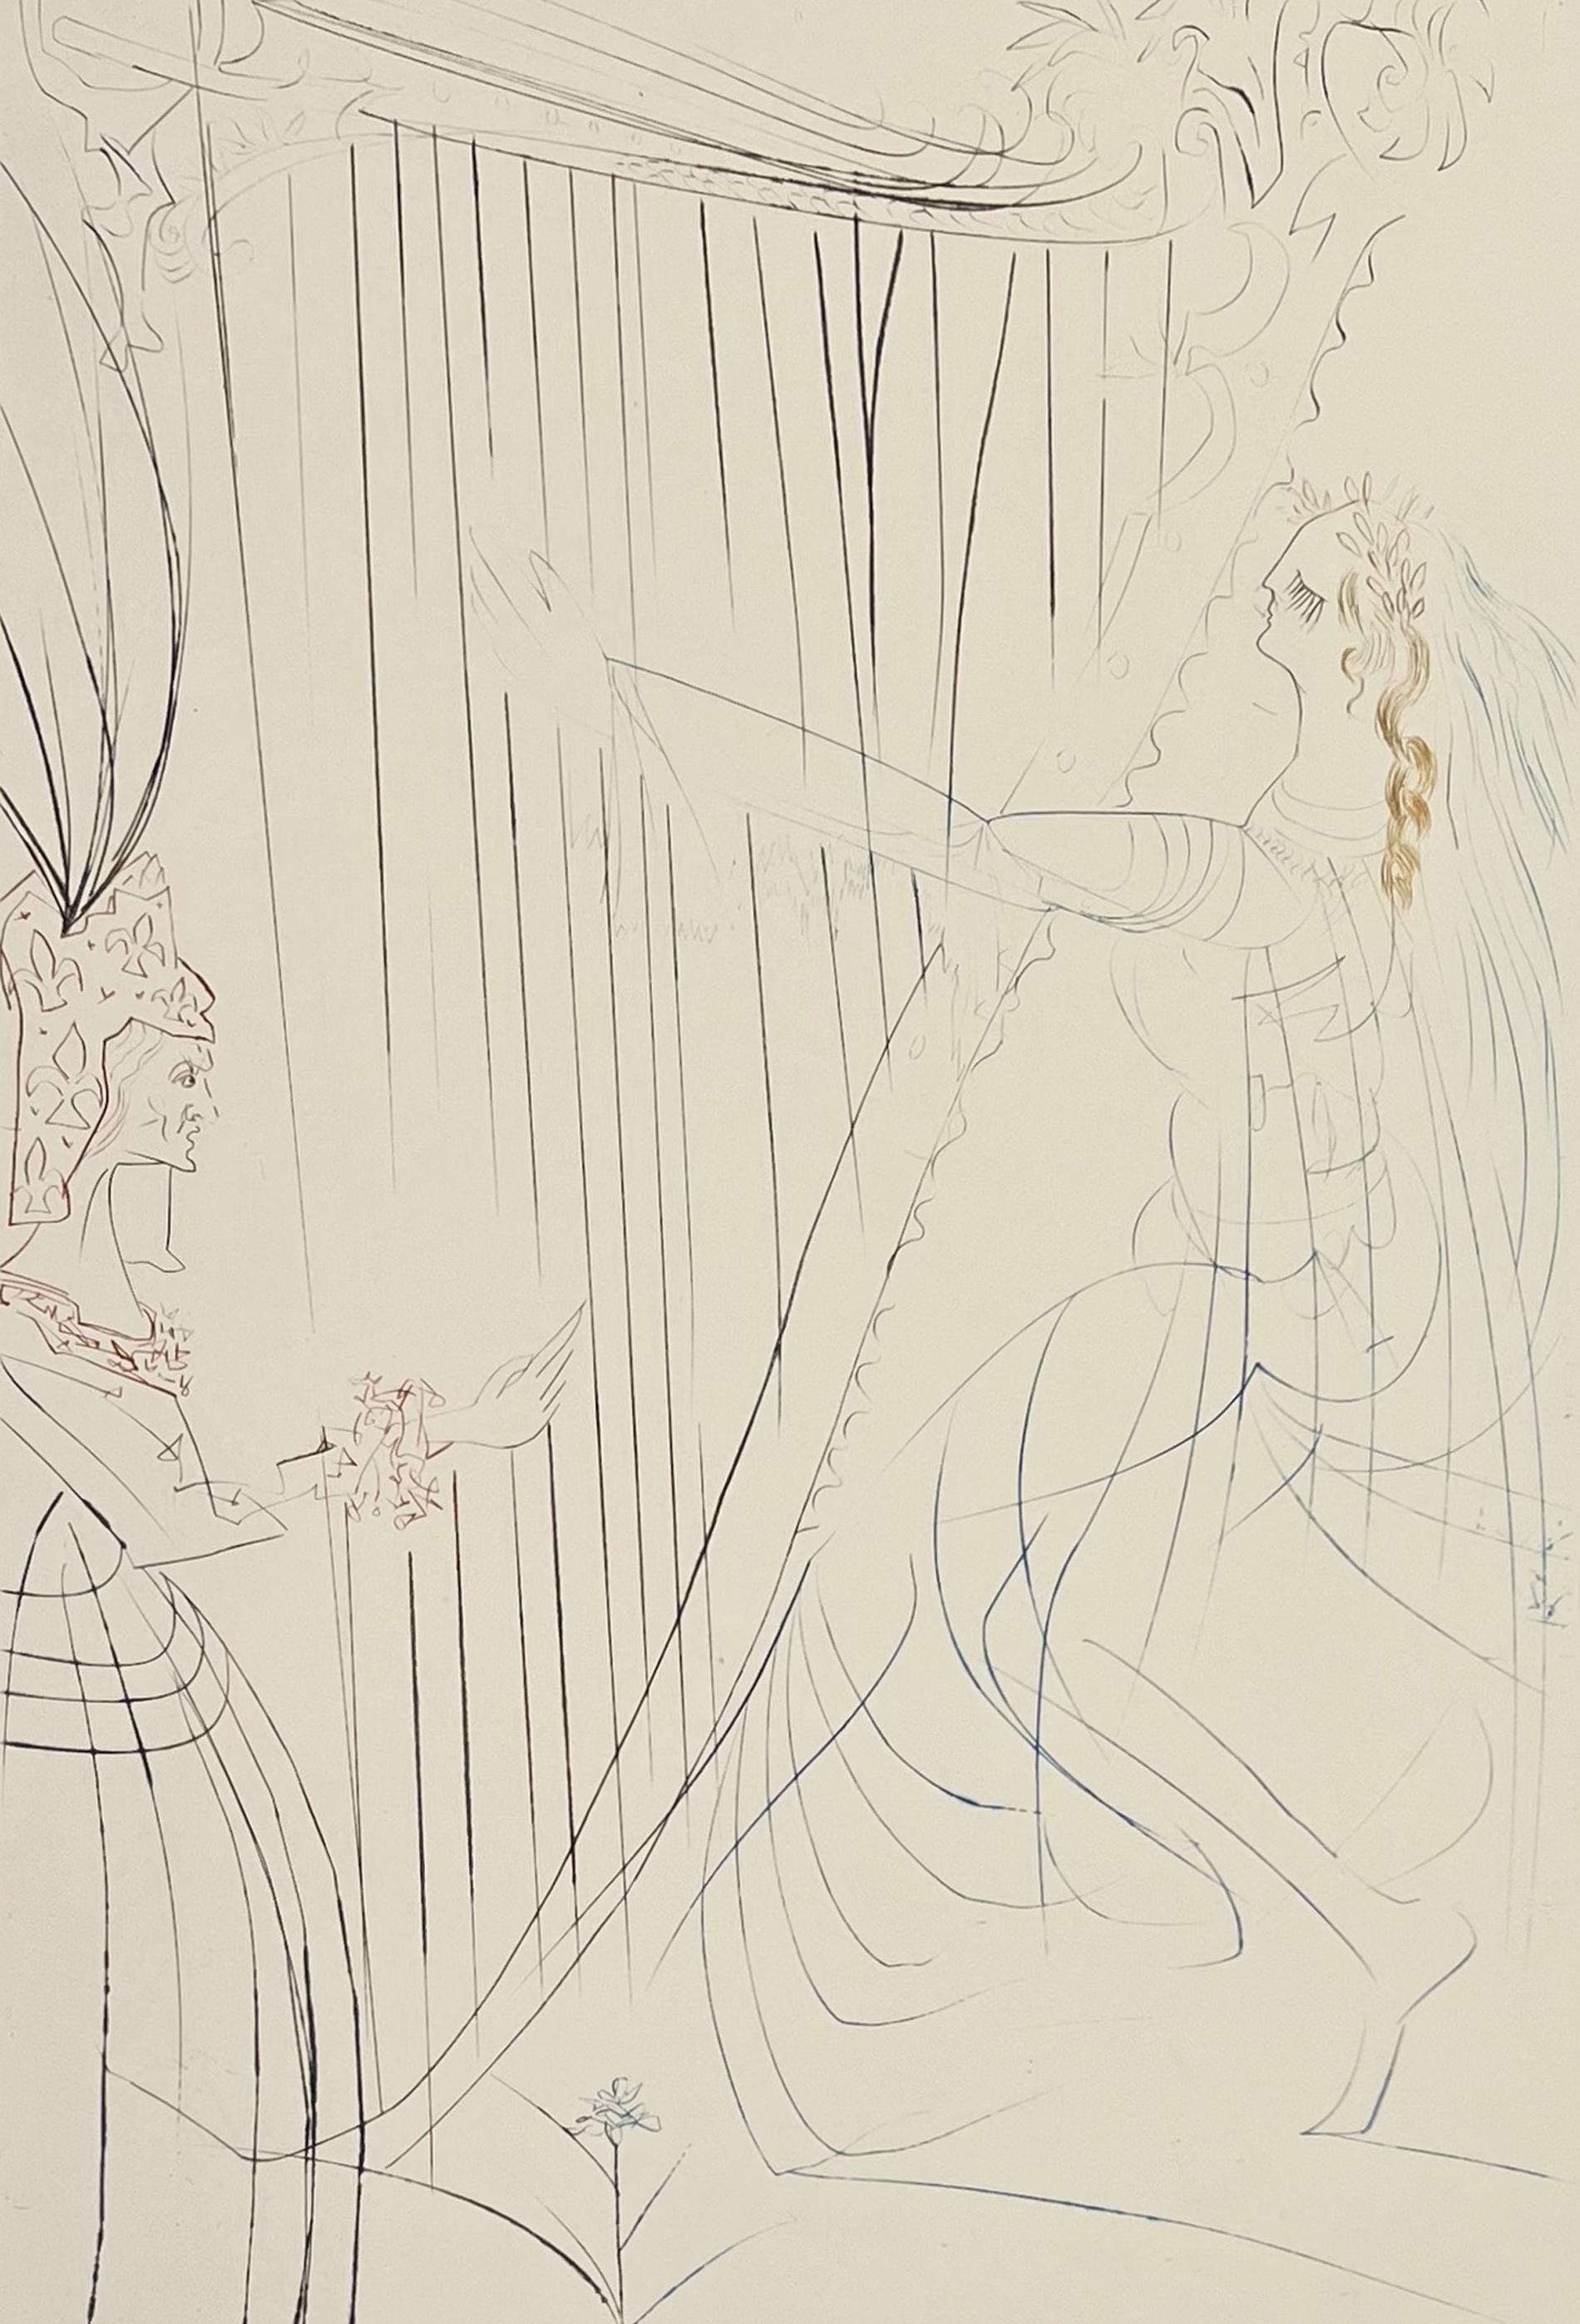 Abstract Print Salvador Dalí - La reine Iseult et sa fille, de Tristan et Iseult